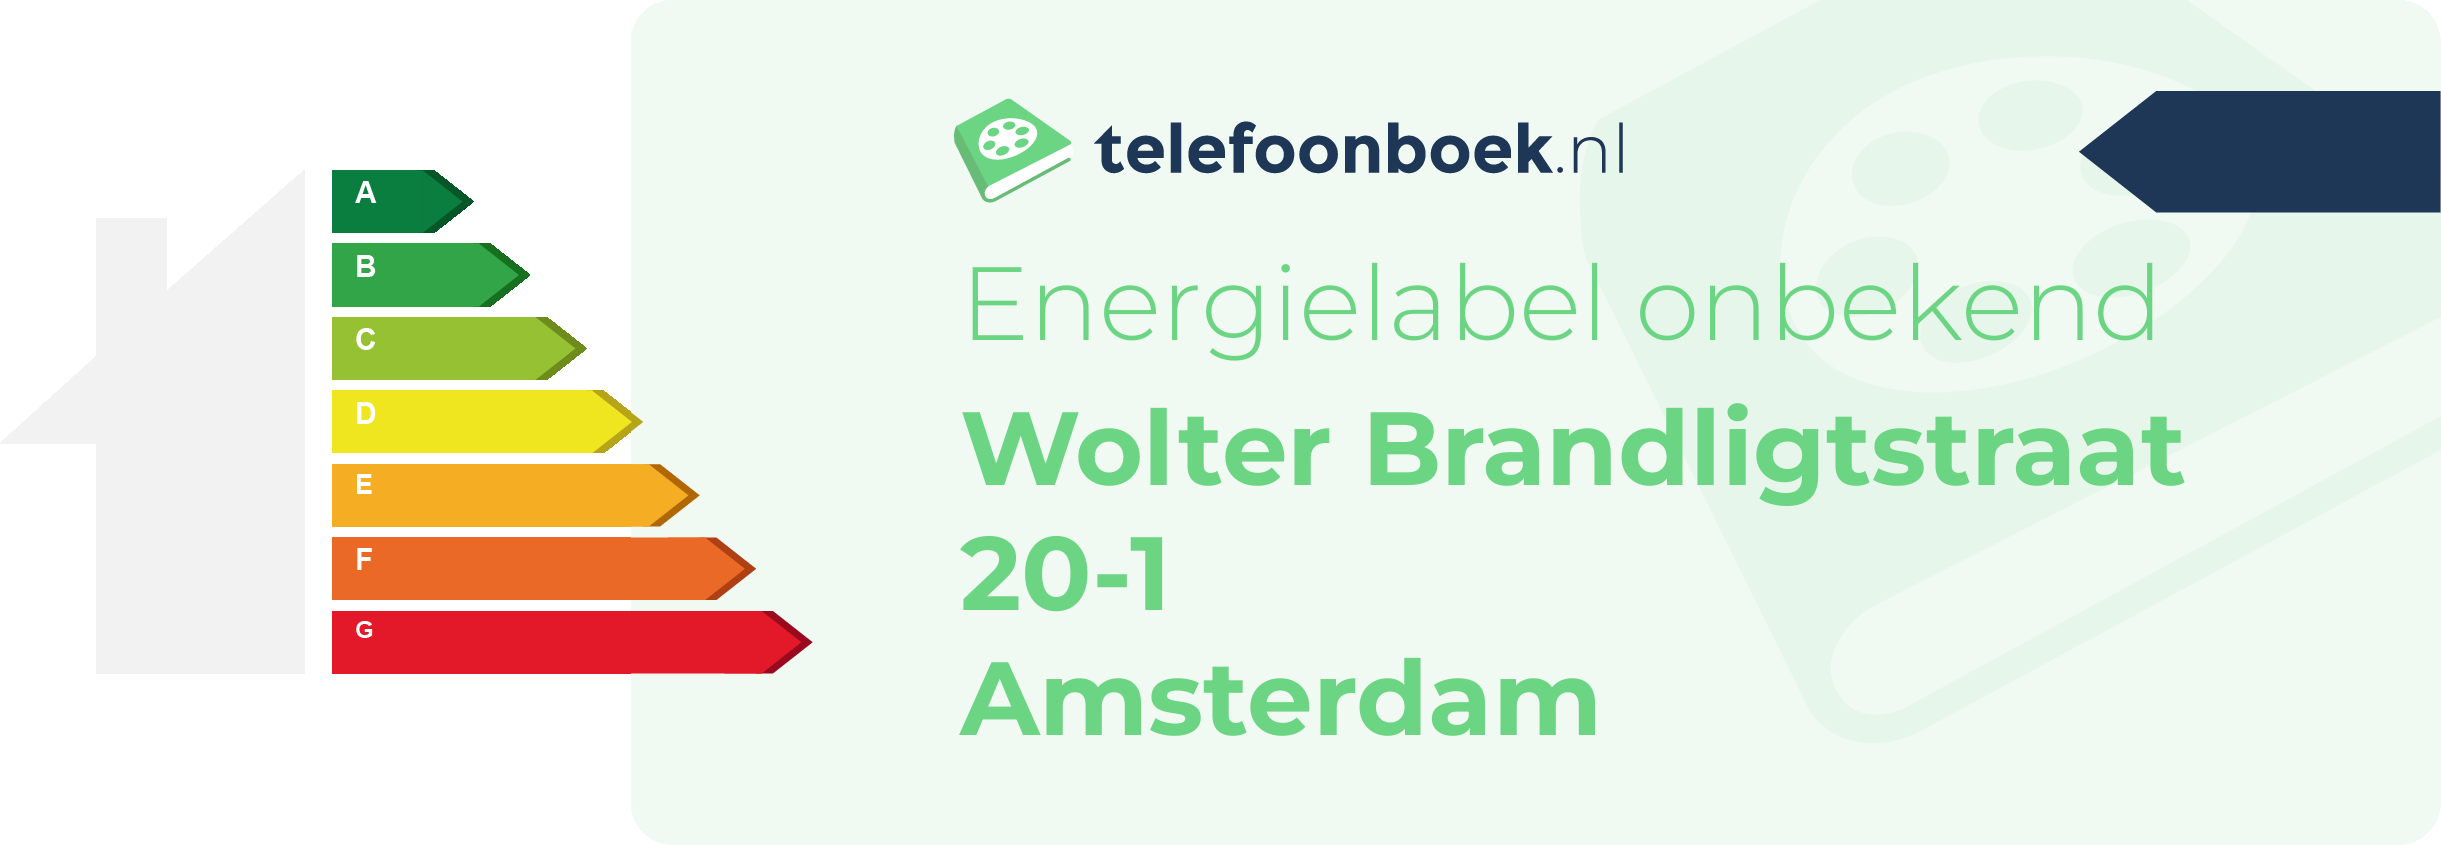 Energielabel Wolter Brandligtstraat 20-1 Amsterdam